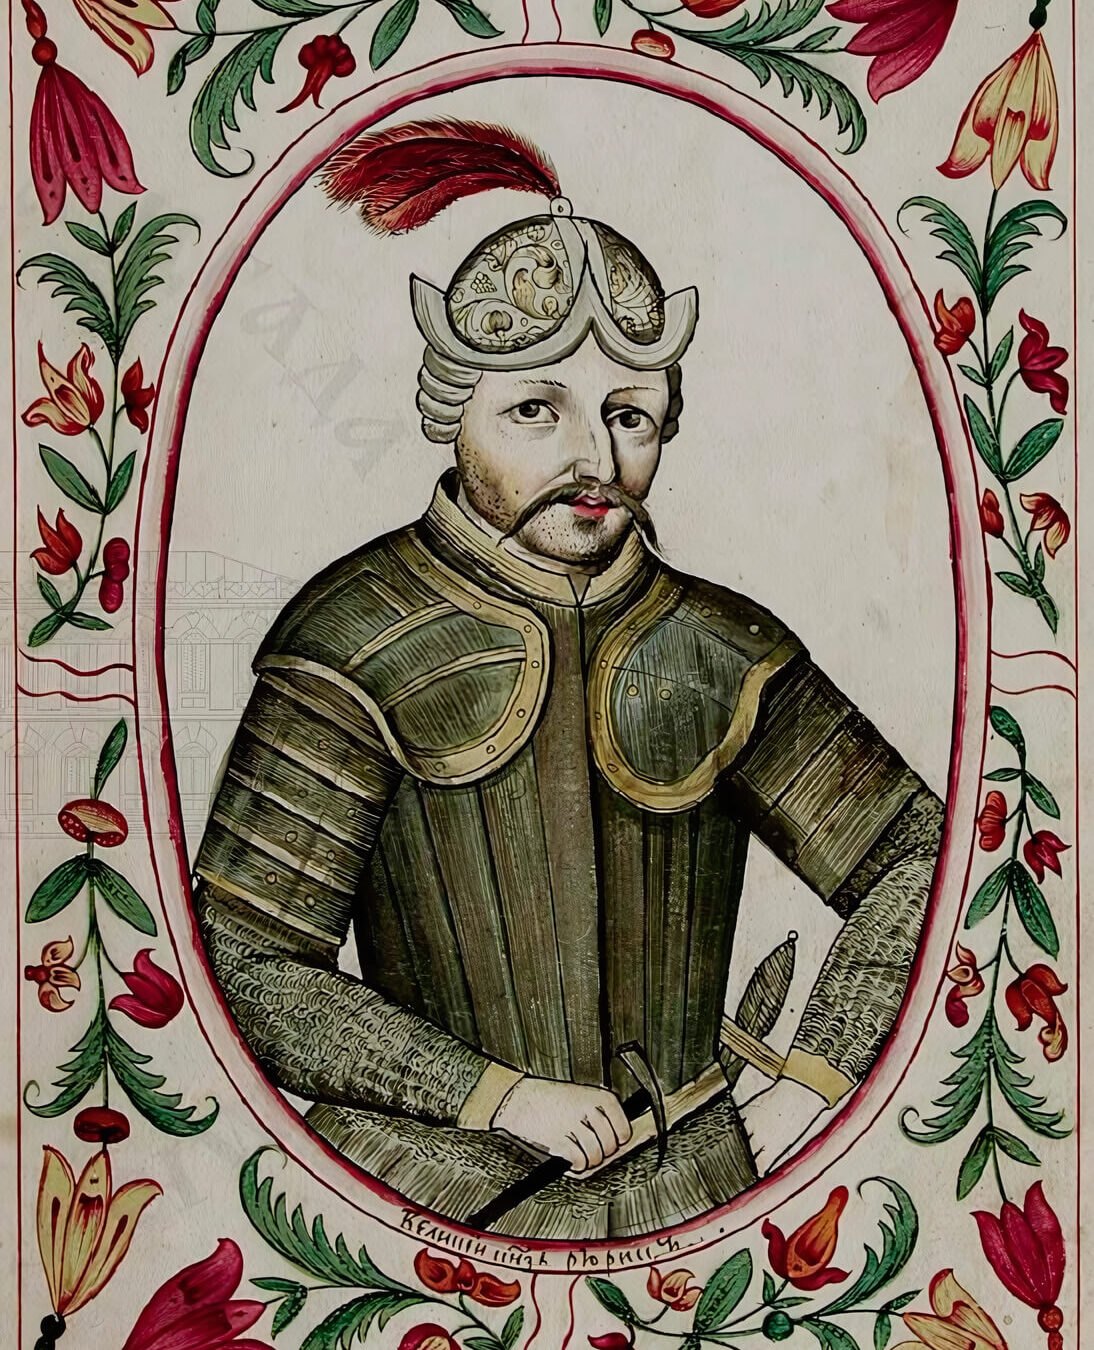 "Рюрик Великий князь Новгородский в 862-879" портрет из Царского титулярника